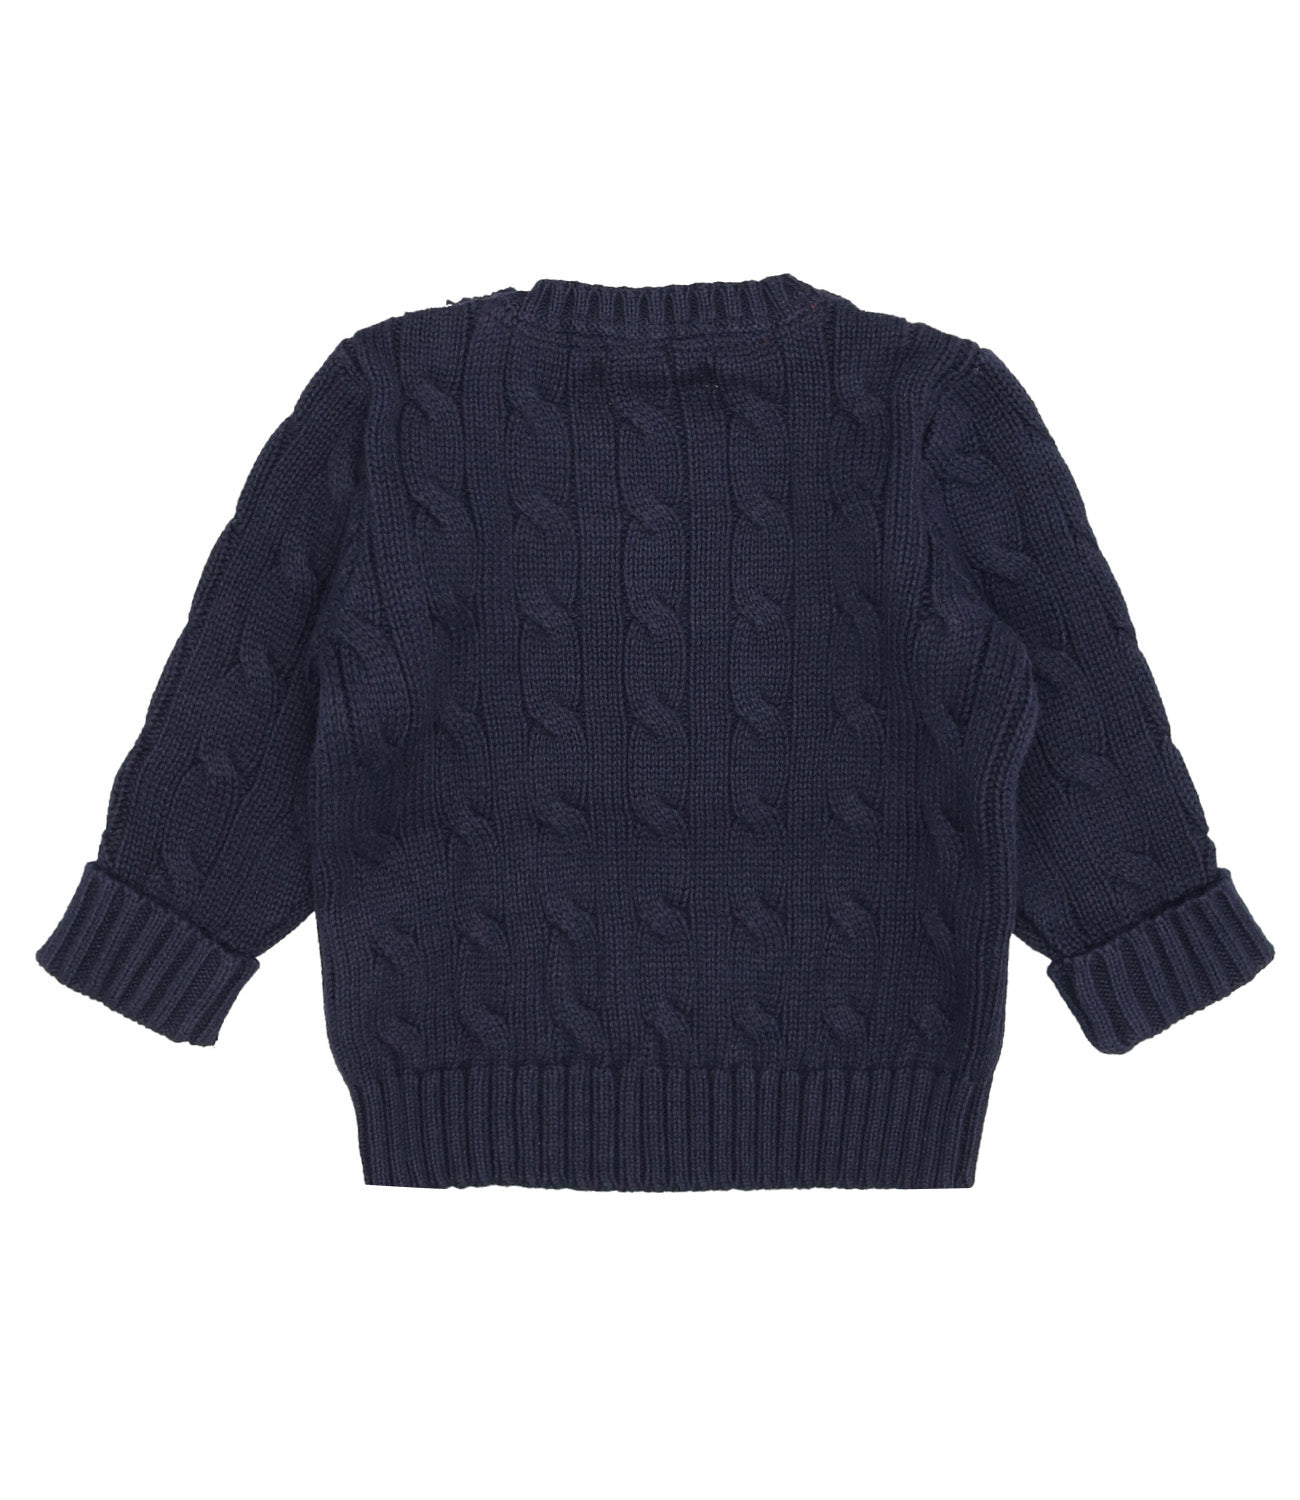 Ralph Lauren Childrenswear | Navy blue shirt